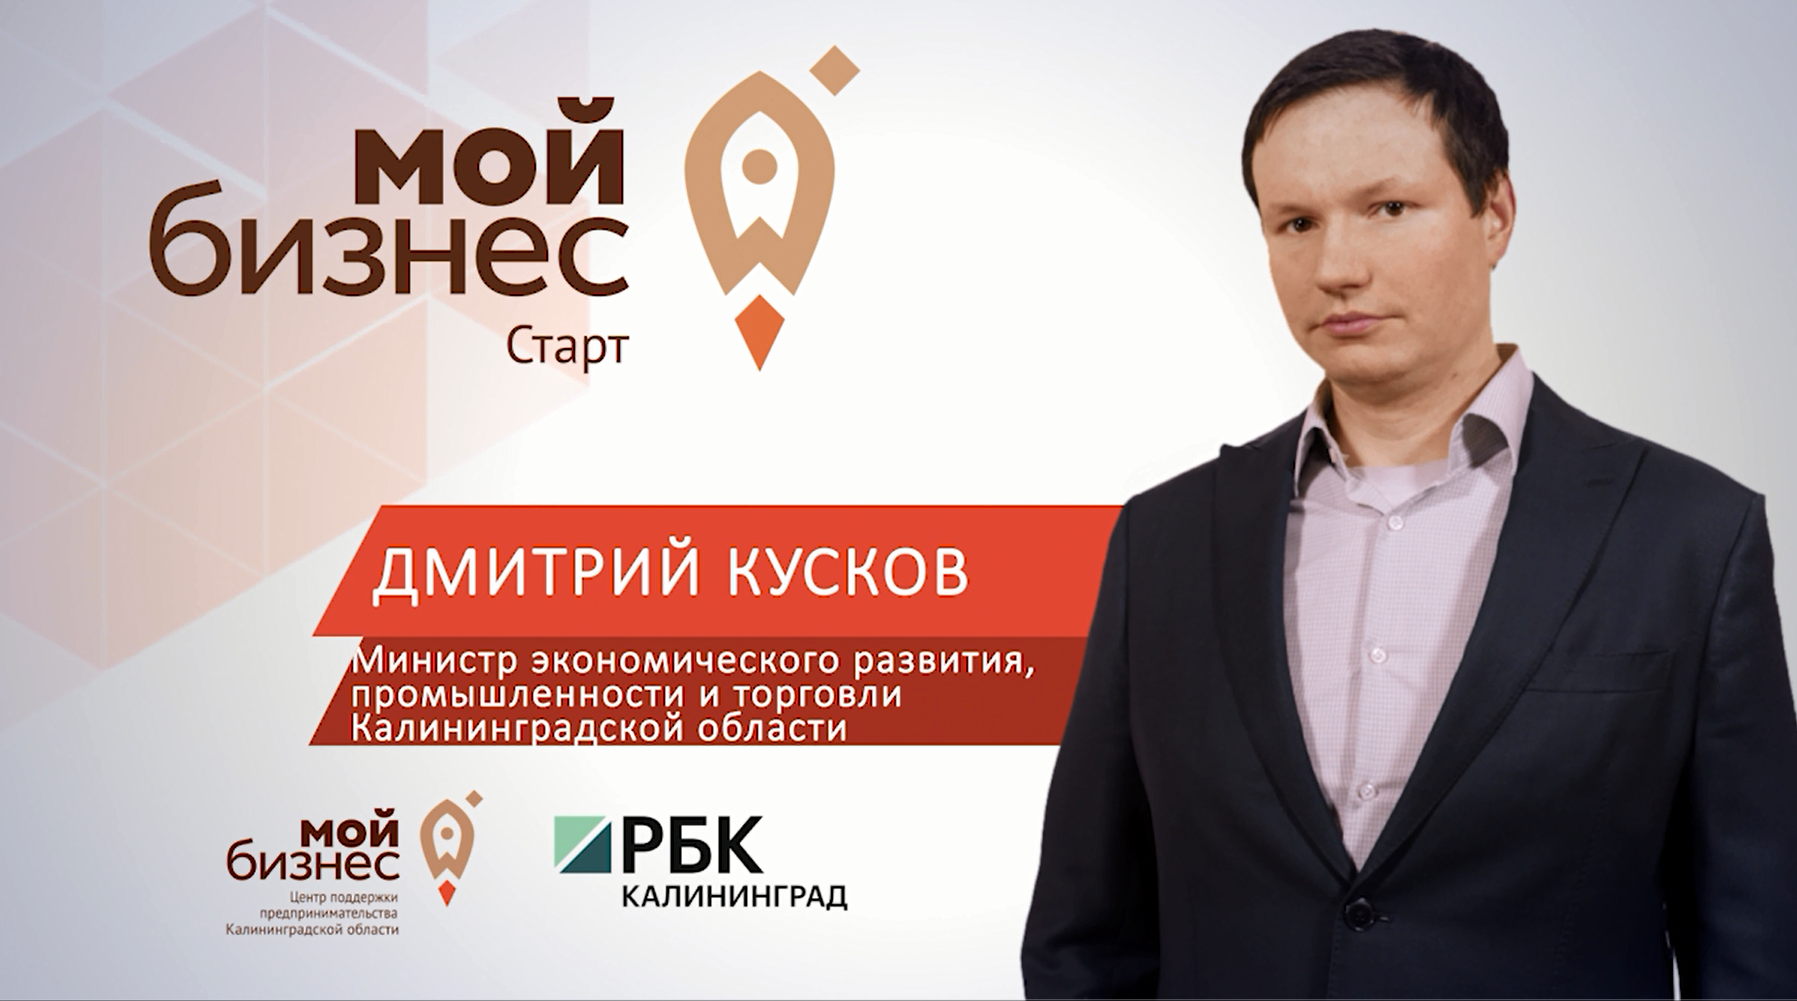 В Калининграде открылся обучающий курс для начинающих предпринимателей